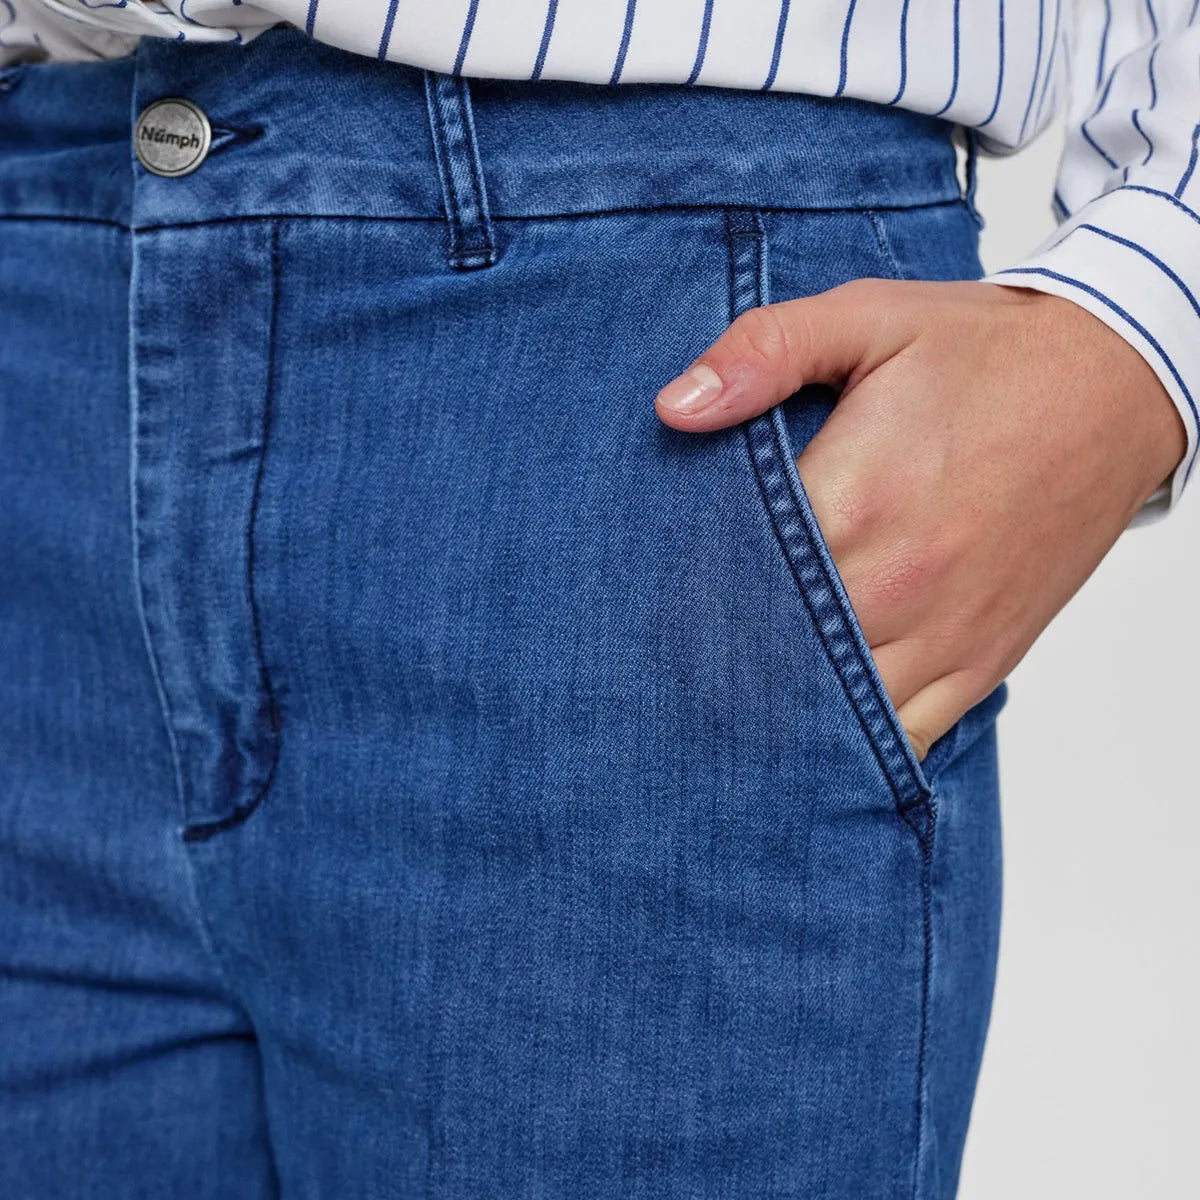 Nuamber jeans fra Nümoh i Medium Blue DenimNuamber jeans fra Nümph i Medium Blue Denim (detalje lomme)